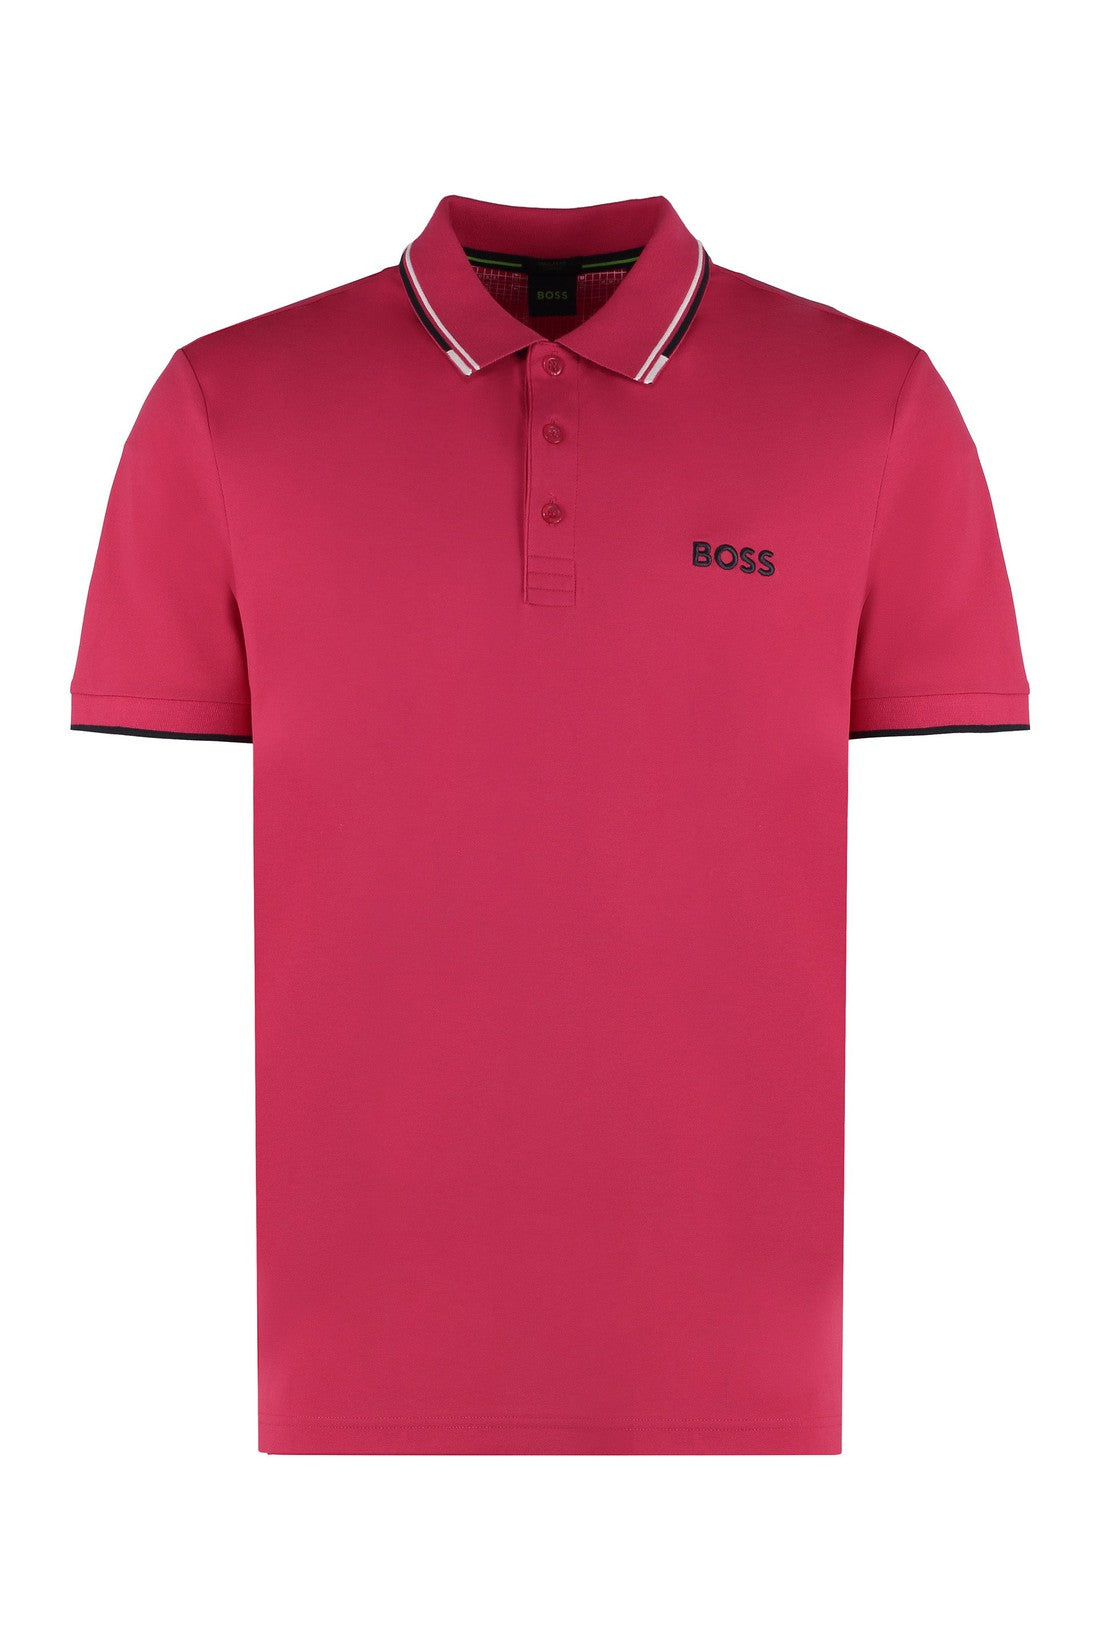 BOSS-OUTLET-SALE-Stretch cotton piqué polo shirt-ARCHIVIST